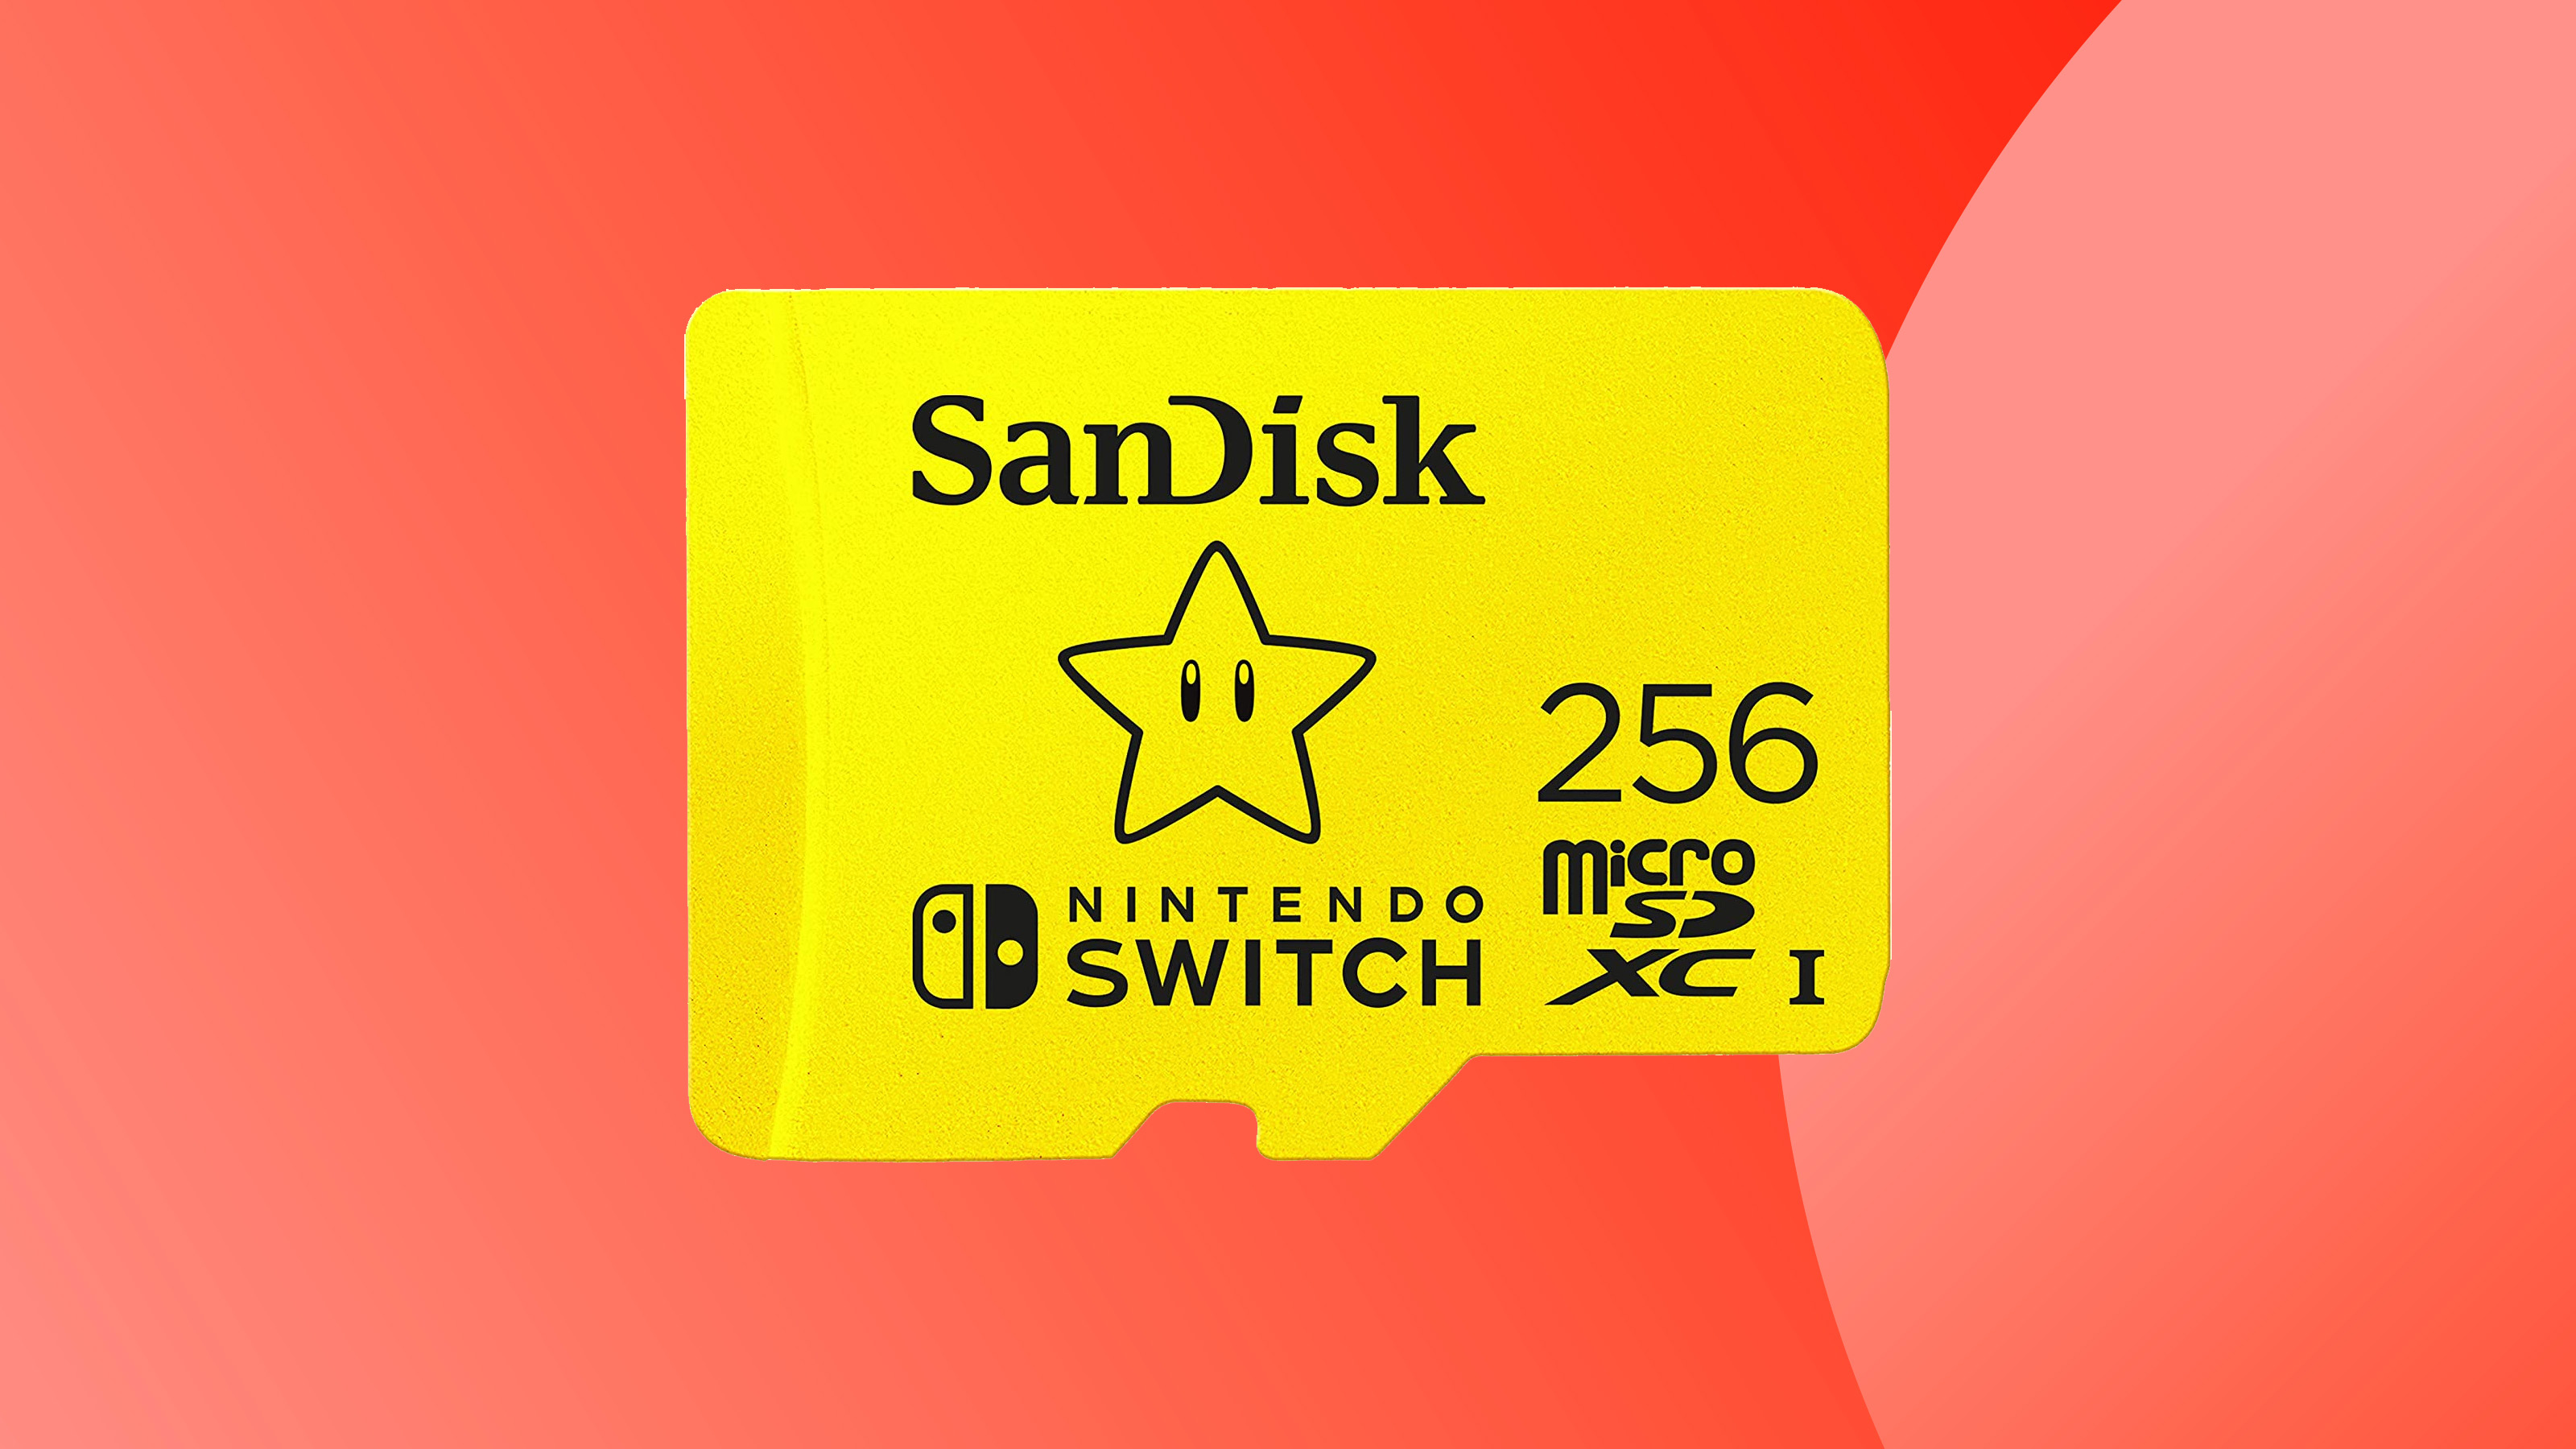 Снимок продукта: карта SanDisk Micro SD на цветном фоне